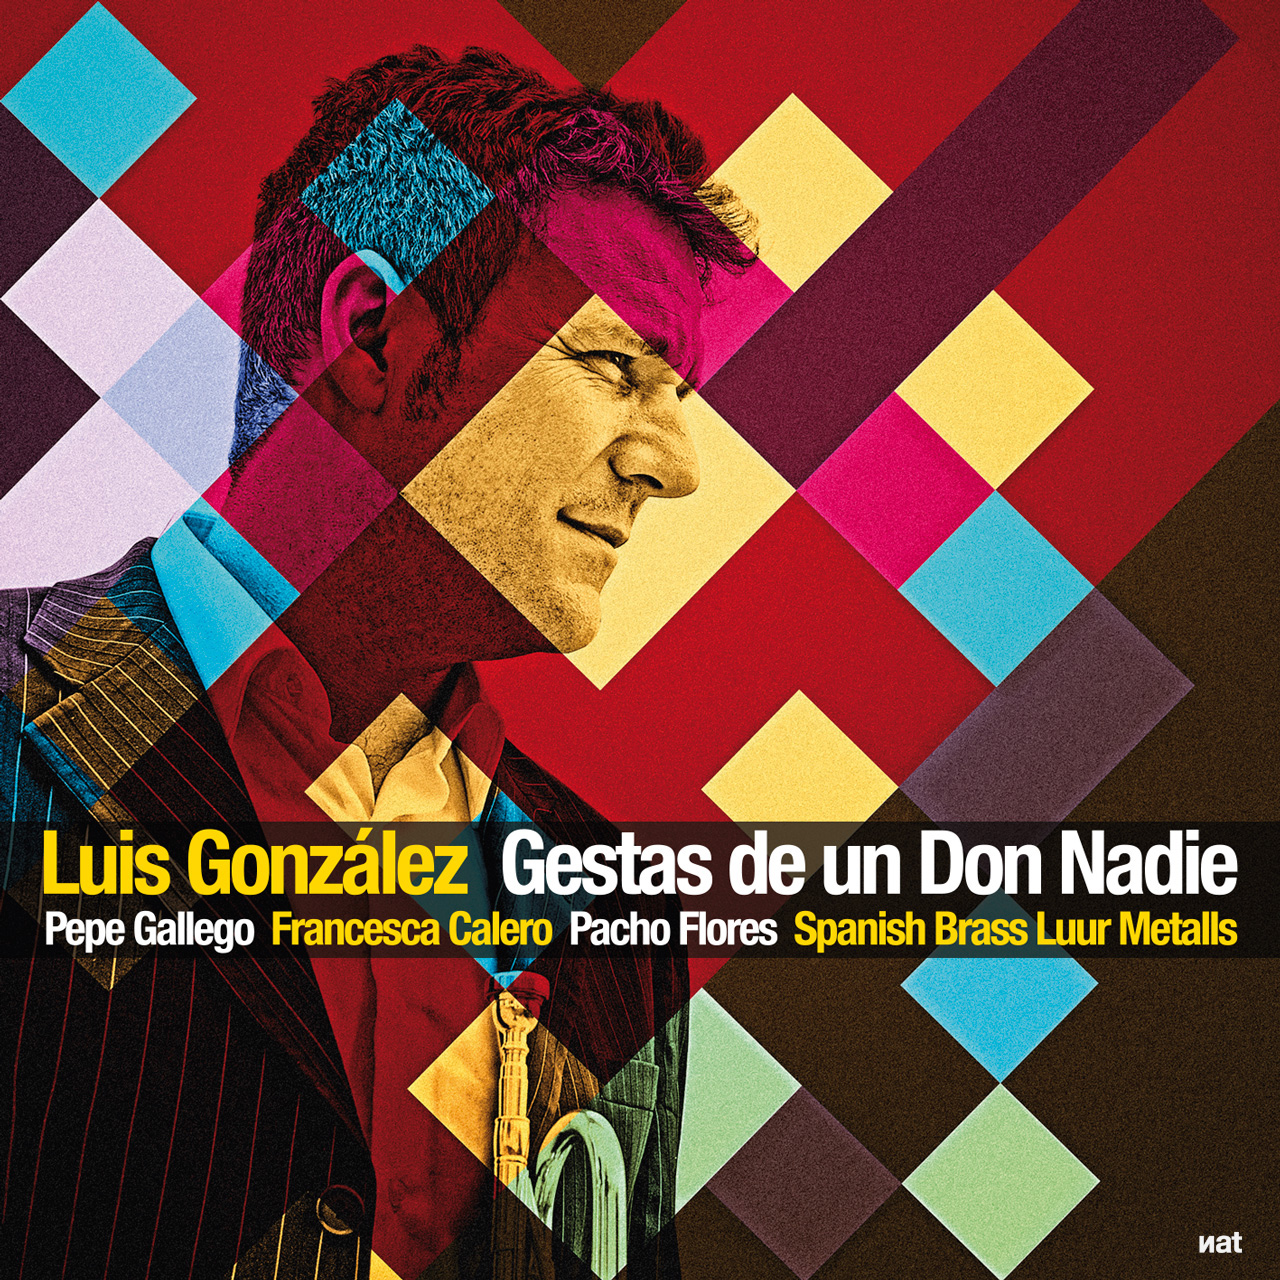 Fotografía y diseño para el disco 'Gestas de un Don Nadie' de Luis González.